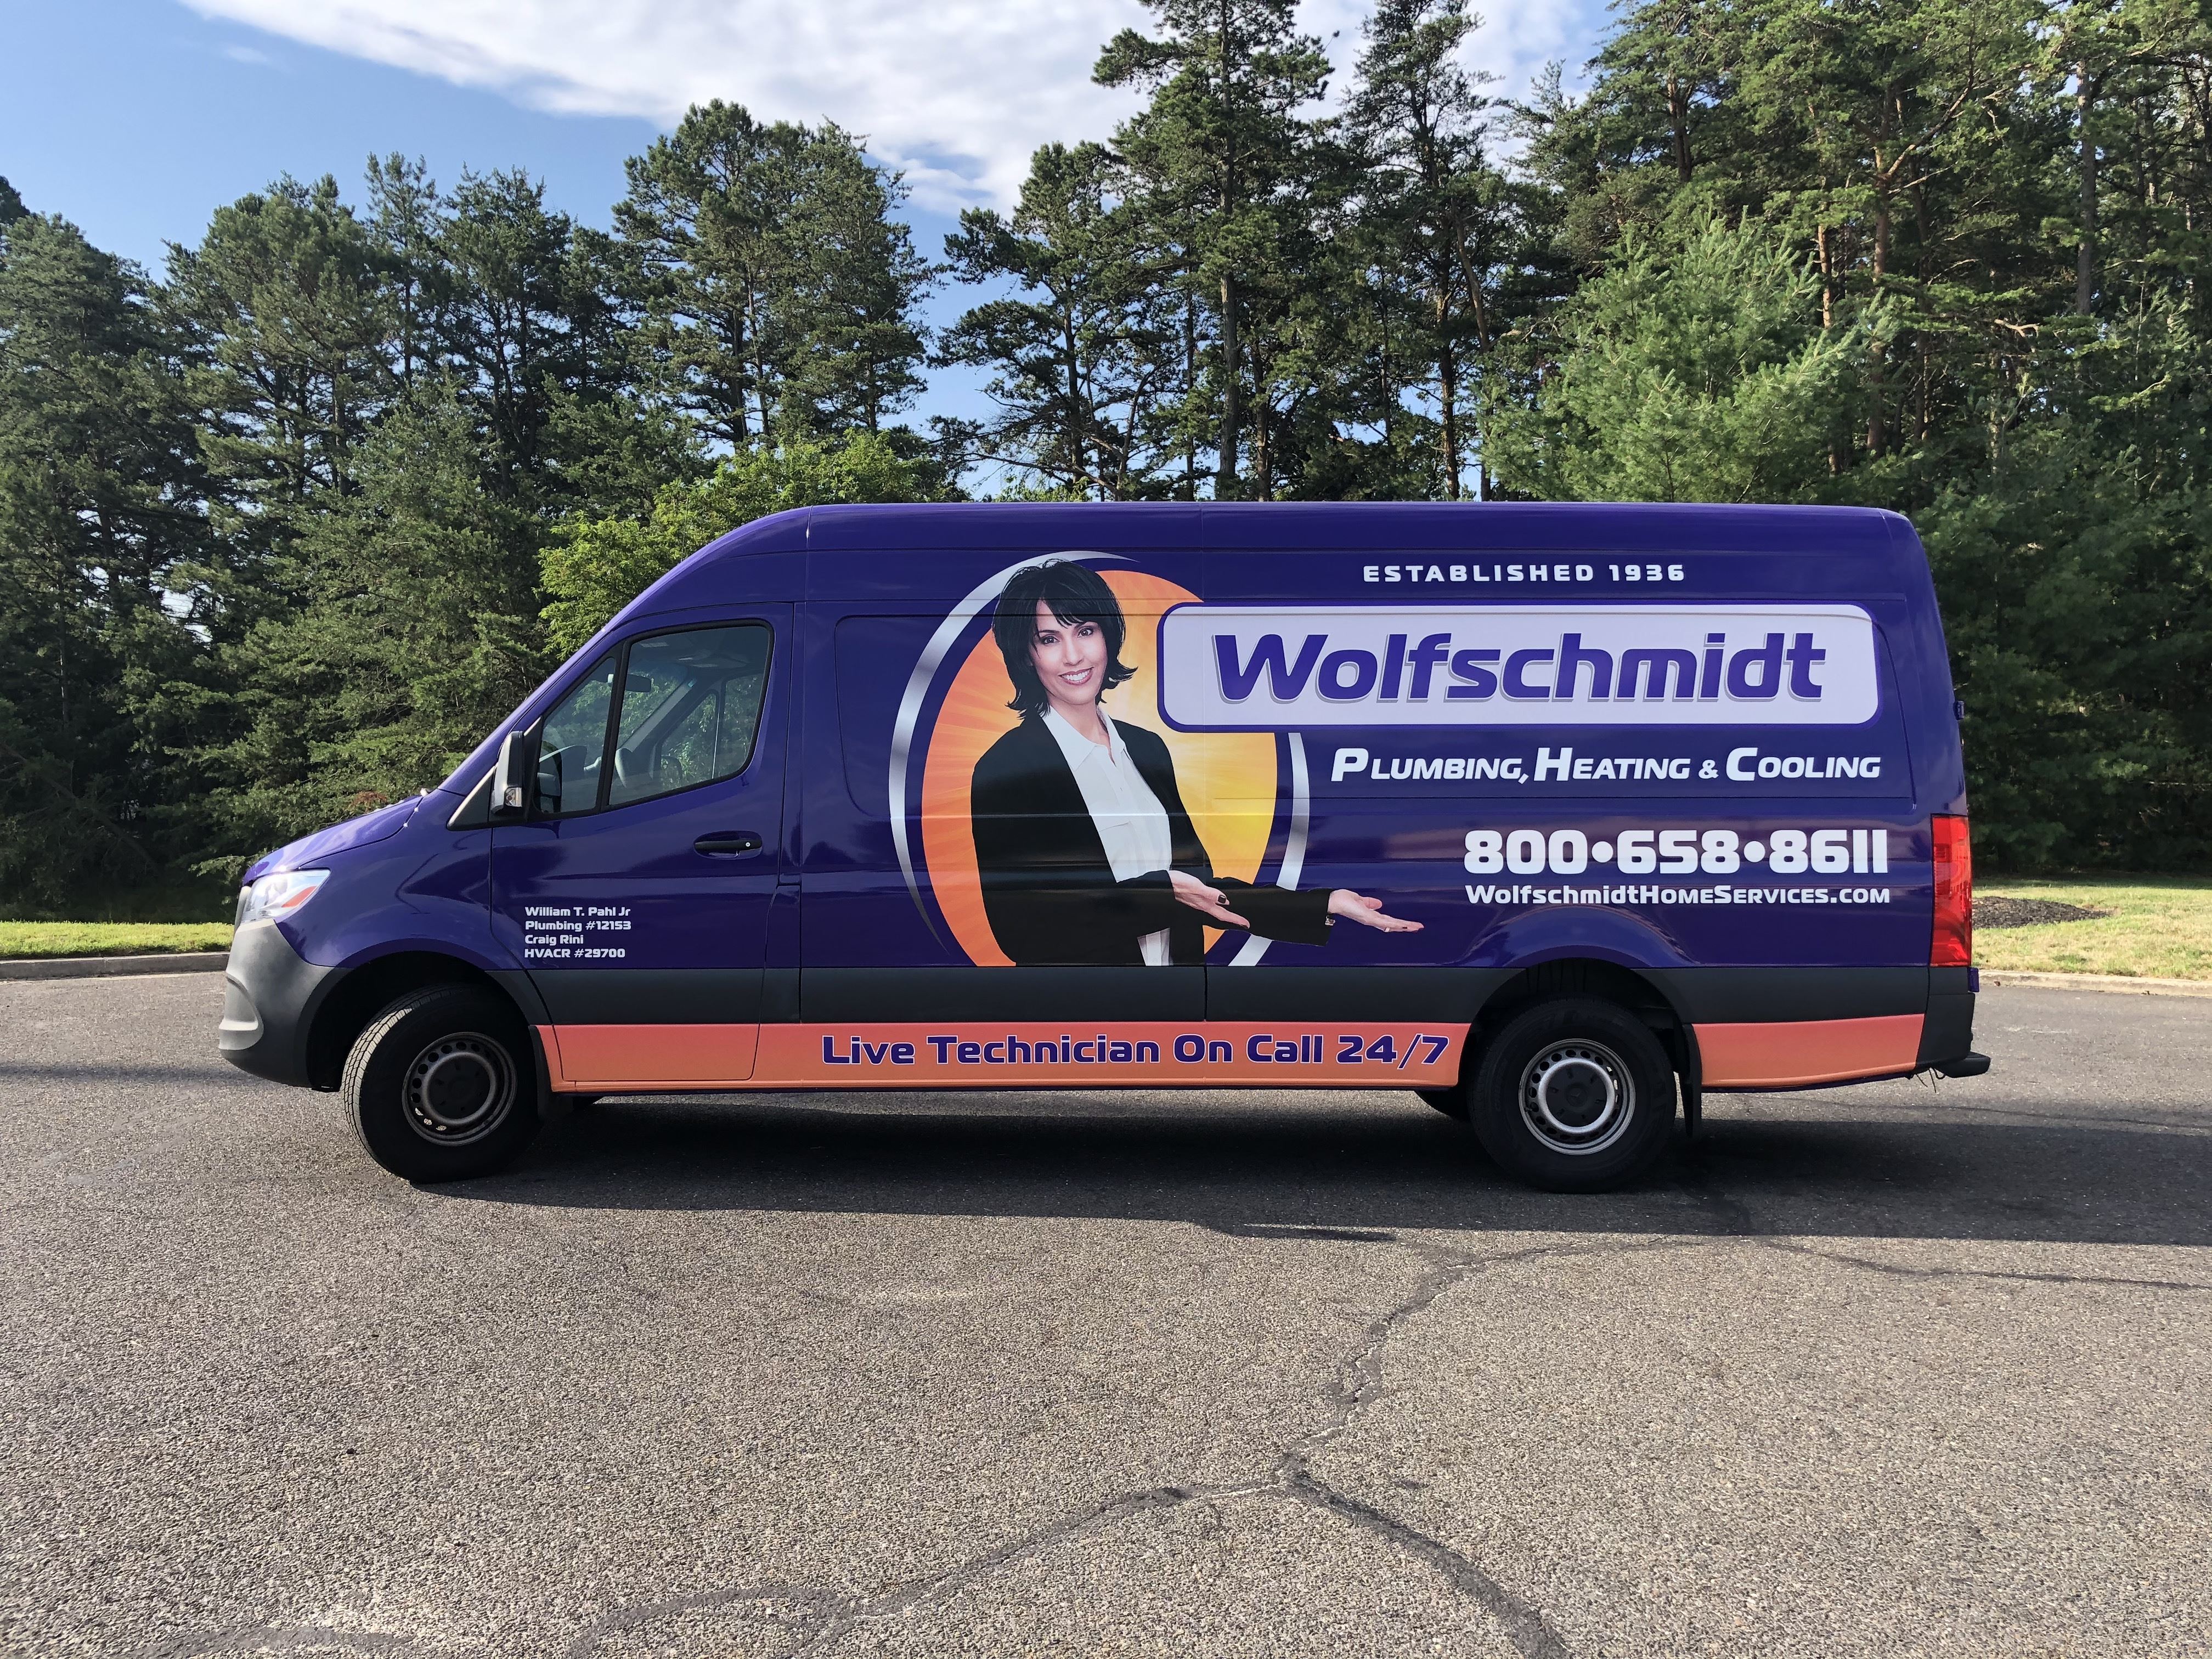 Wolfschmidt Plumbing, Heating & Cooling truck